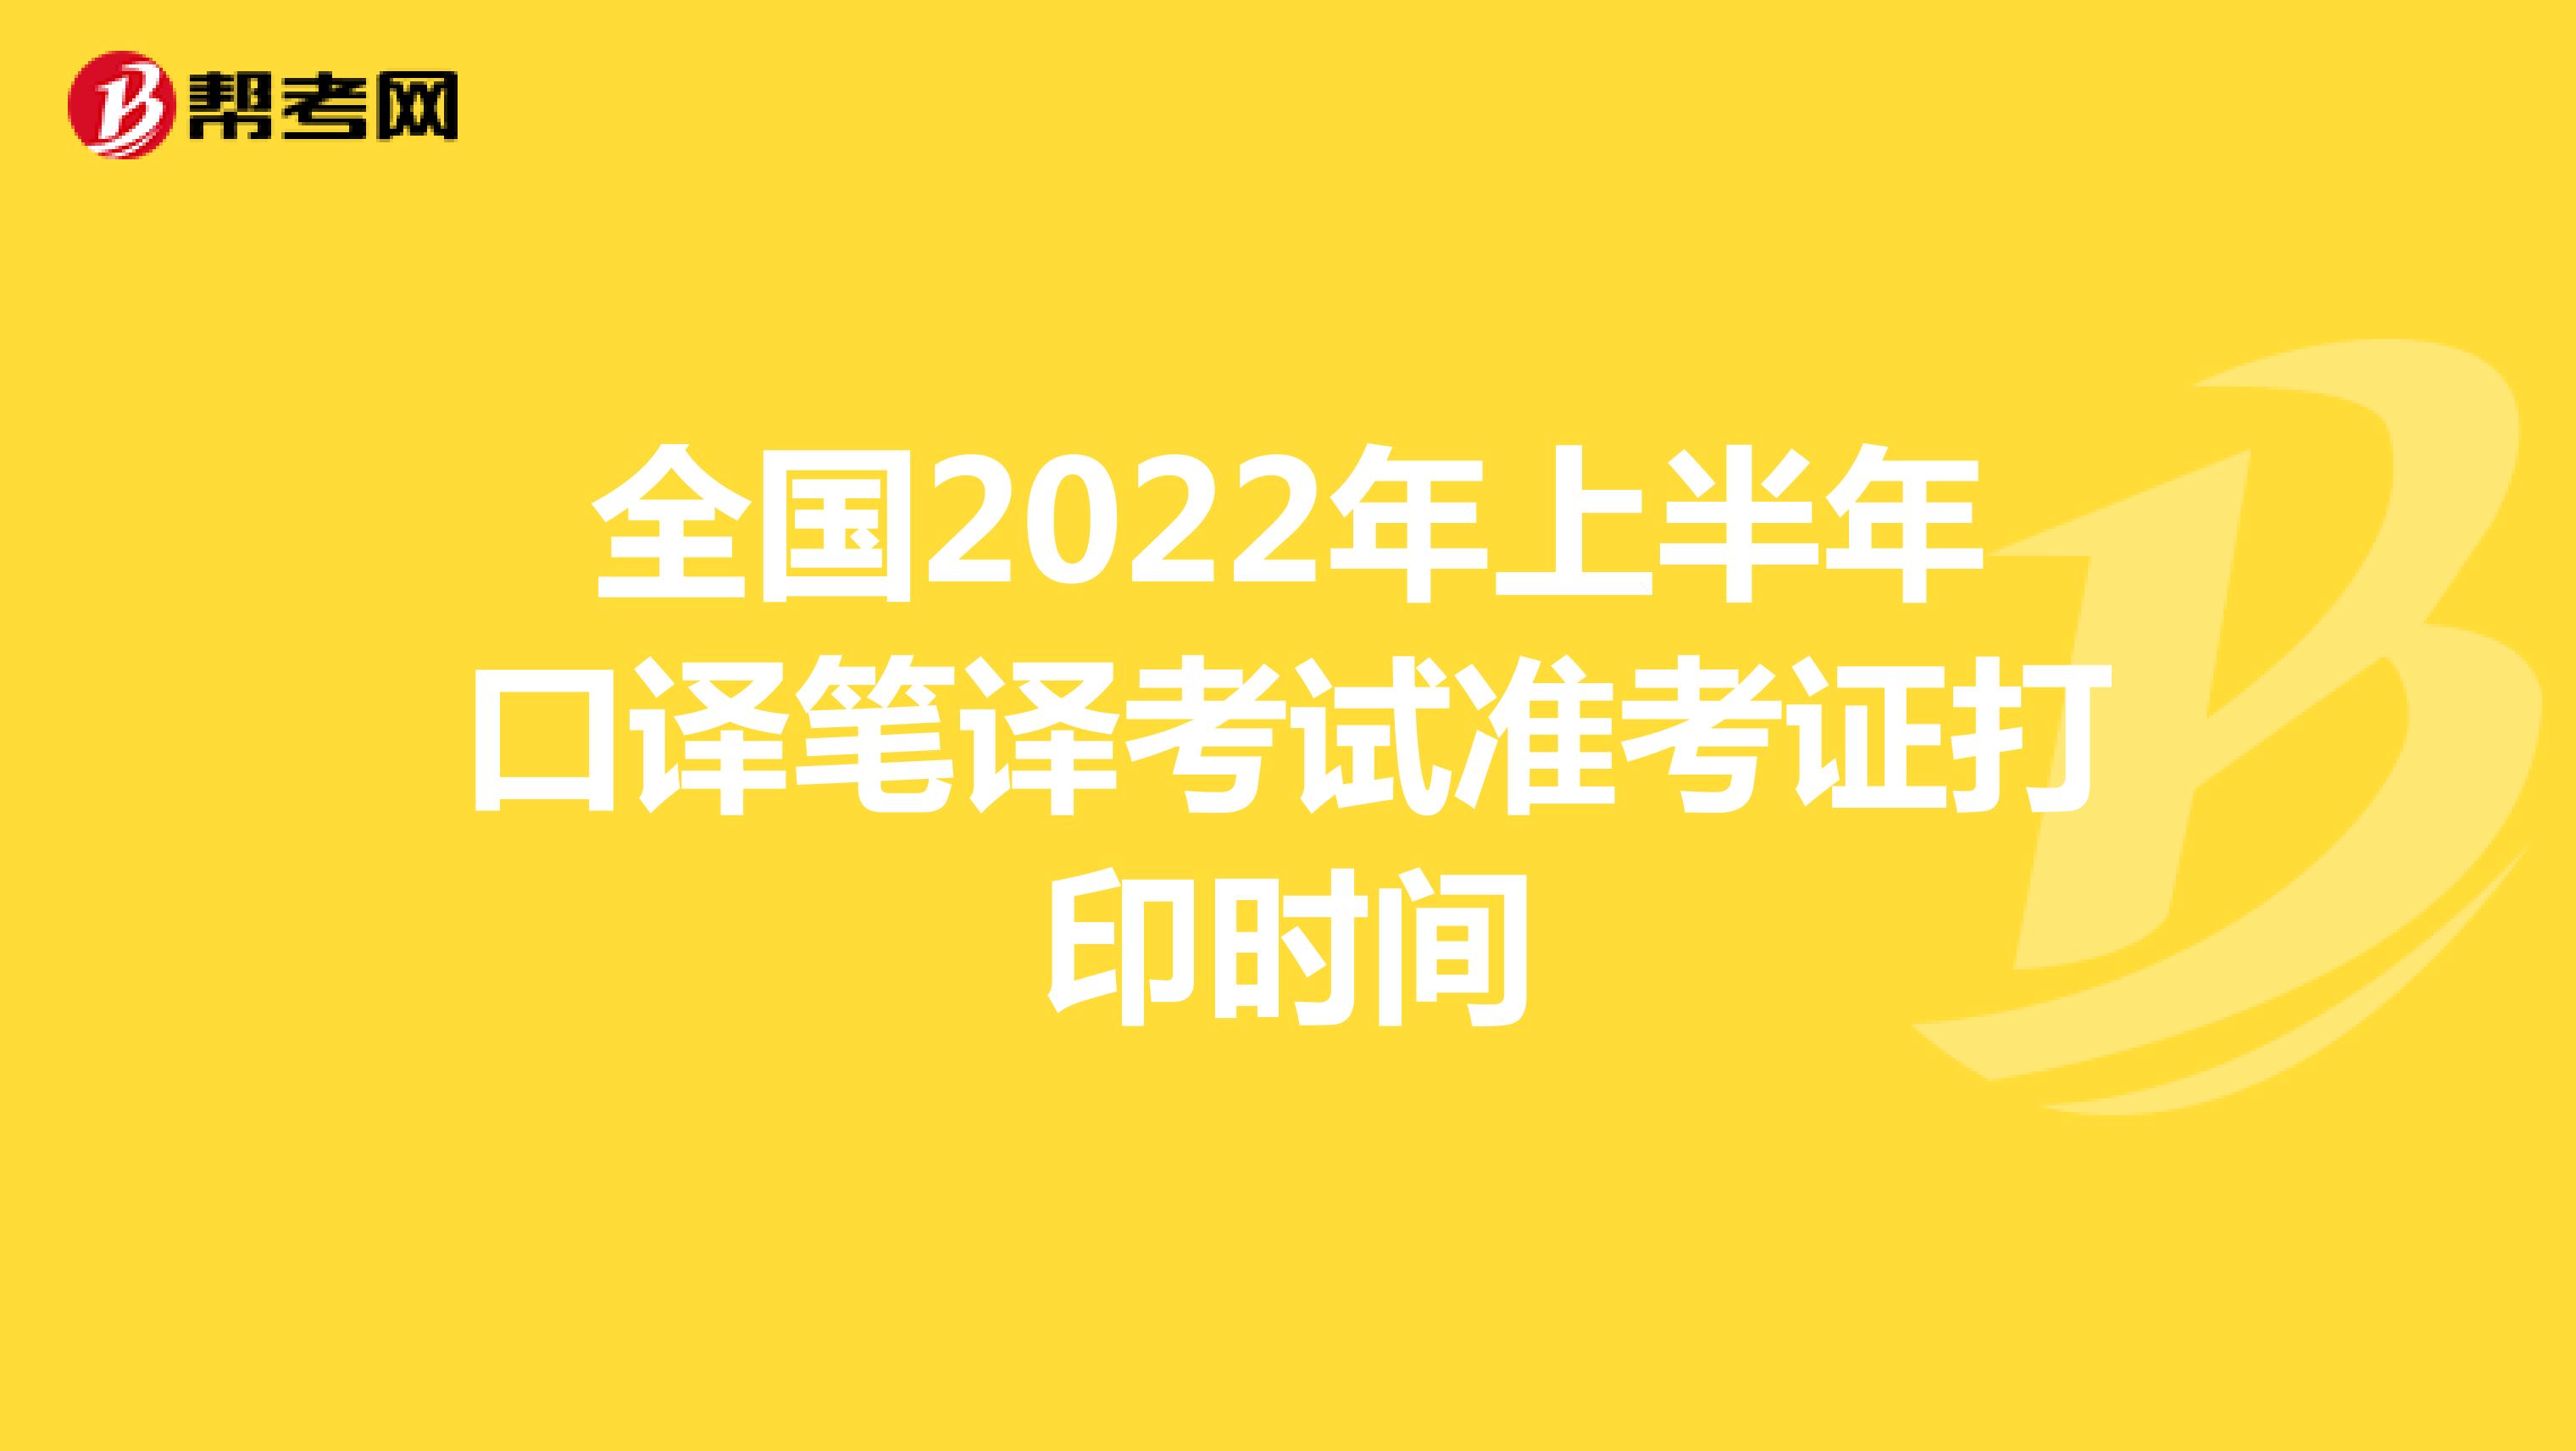 全国2022年上半年口译笔译考试准考证打印时间